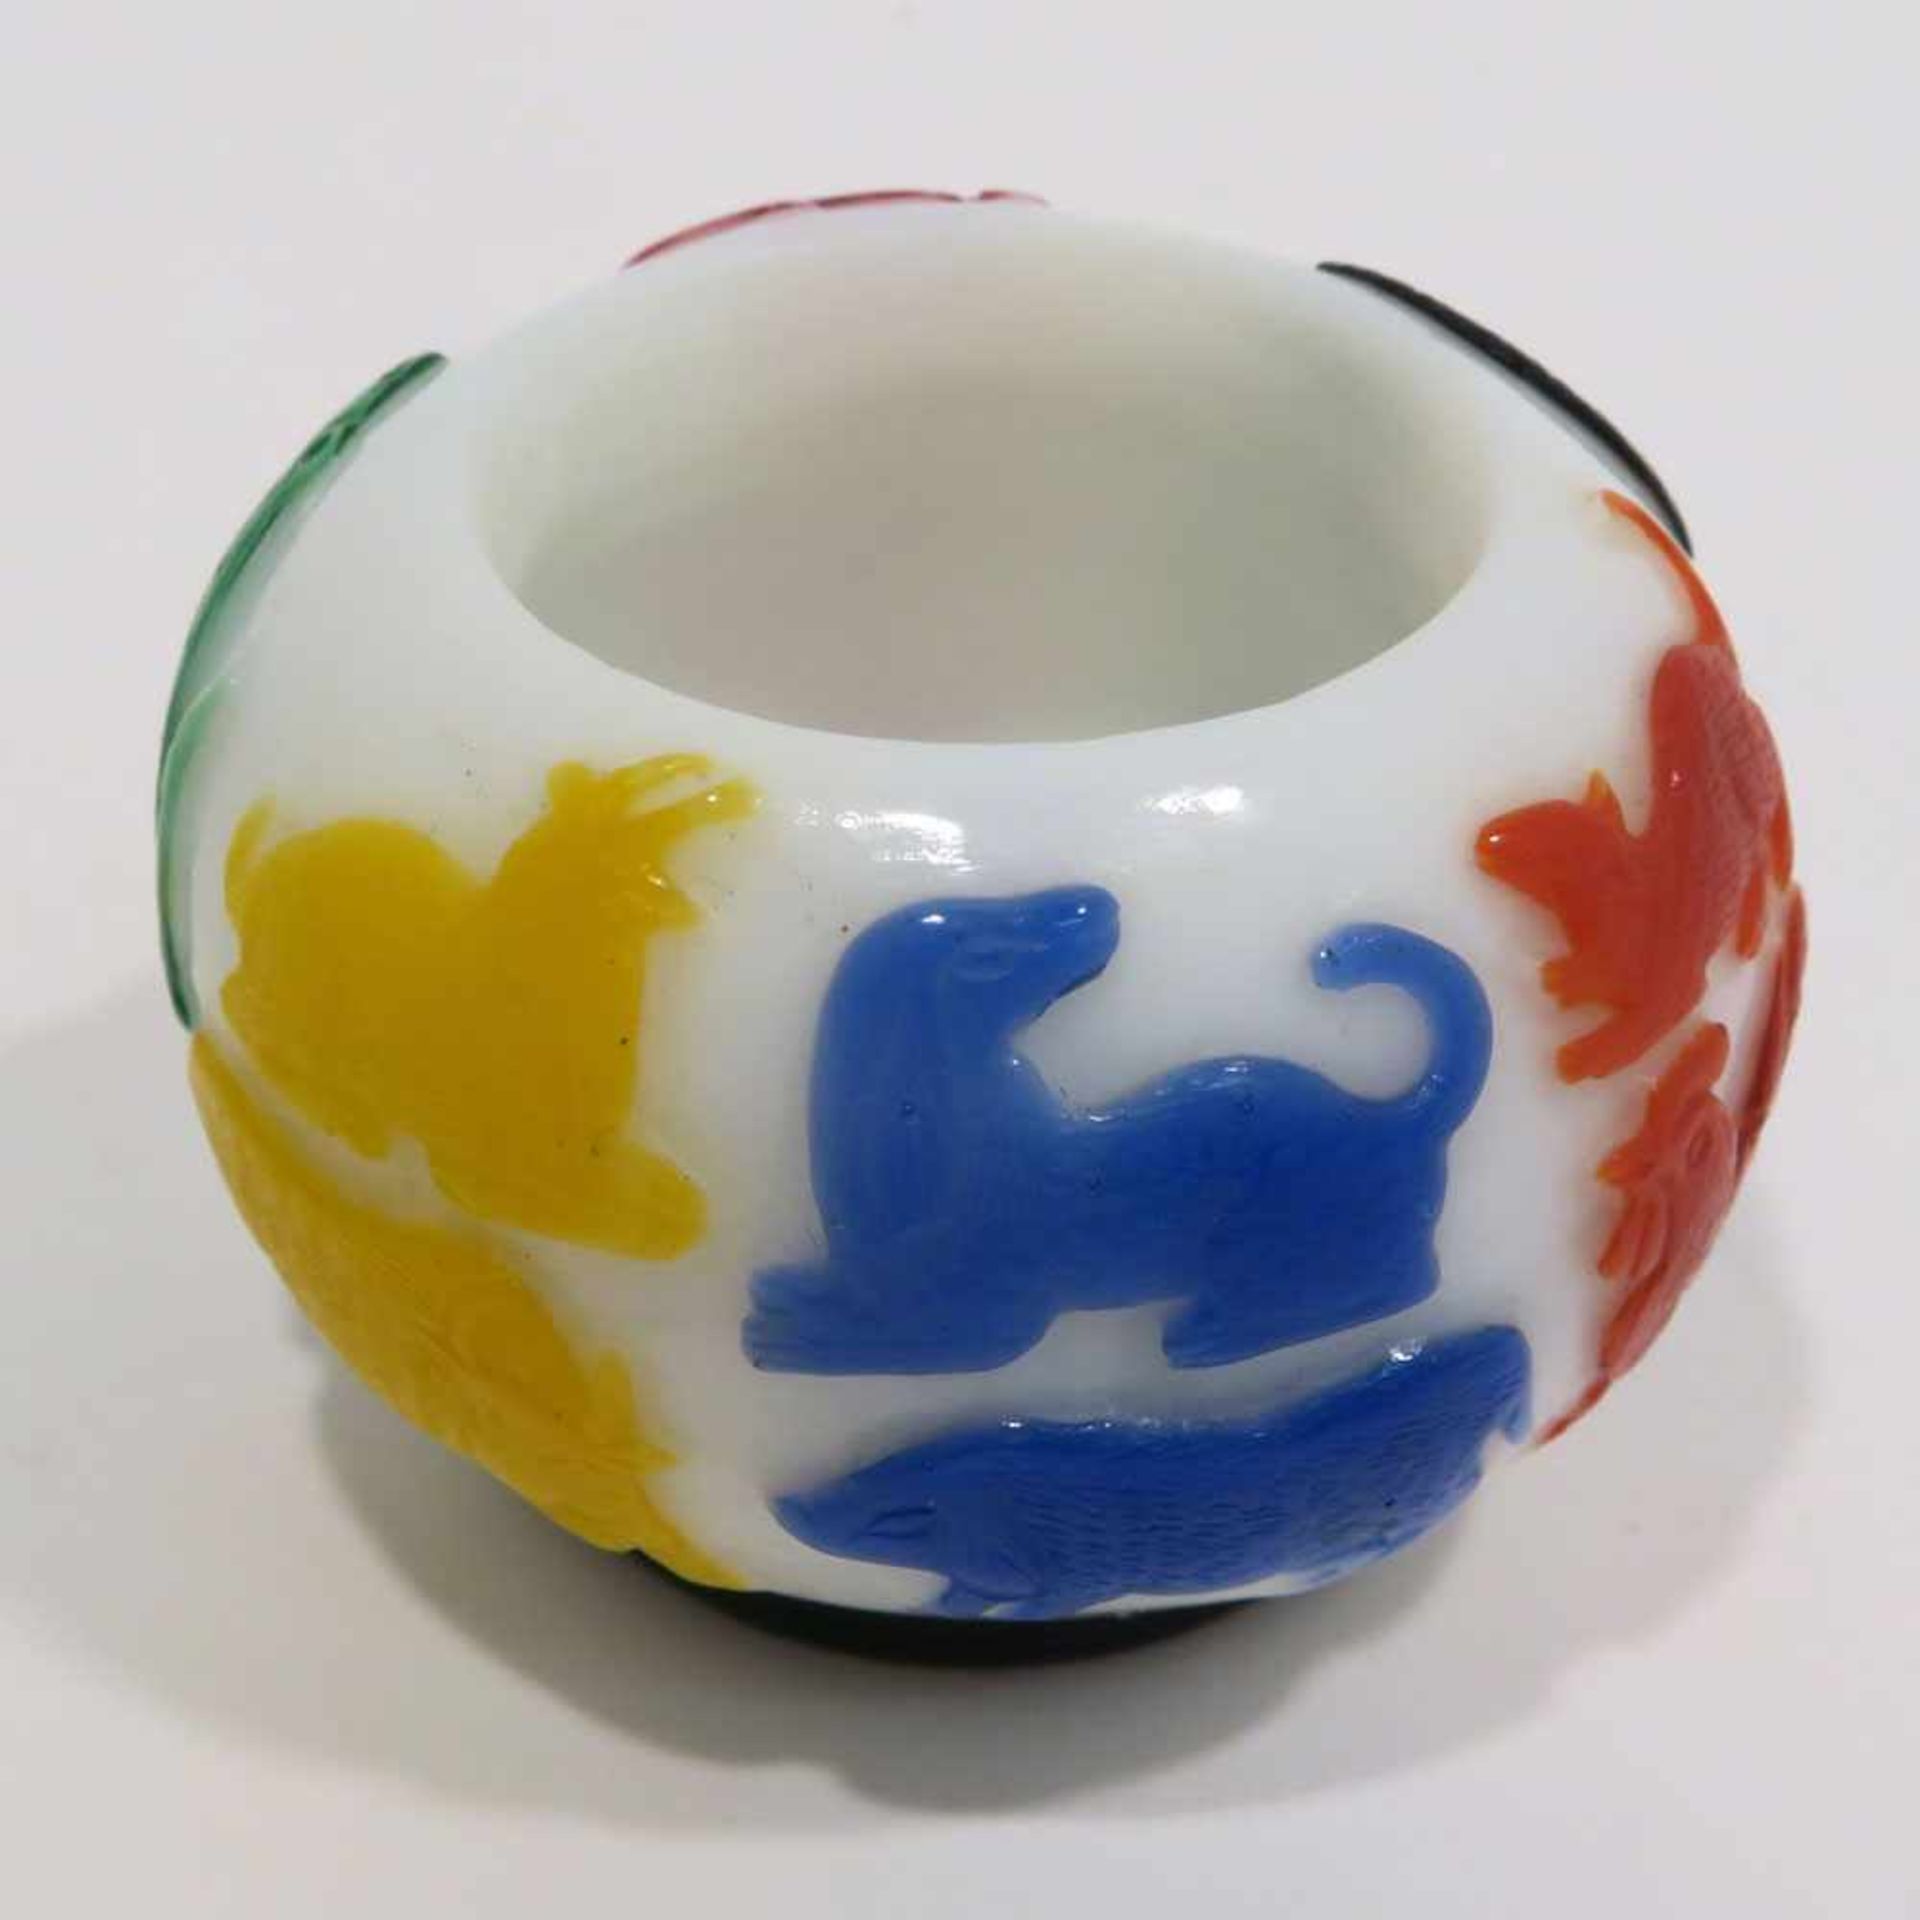 PinselwascherChina. Peking-Glas. Weiß mit mehrfarbigen Tiermotiven. H. 3,5 cm, Ø ca. 5,5 cm.